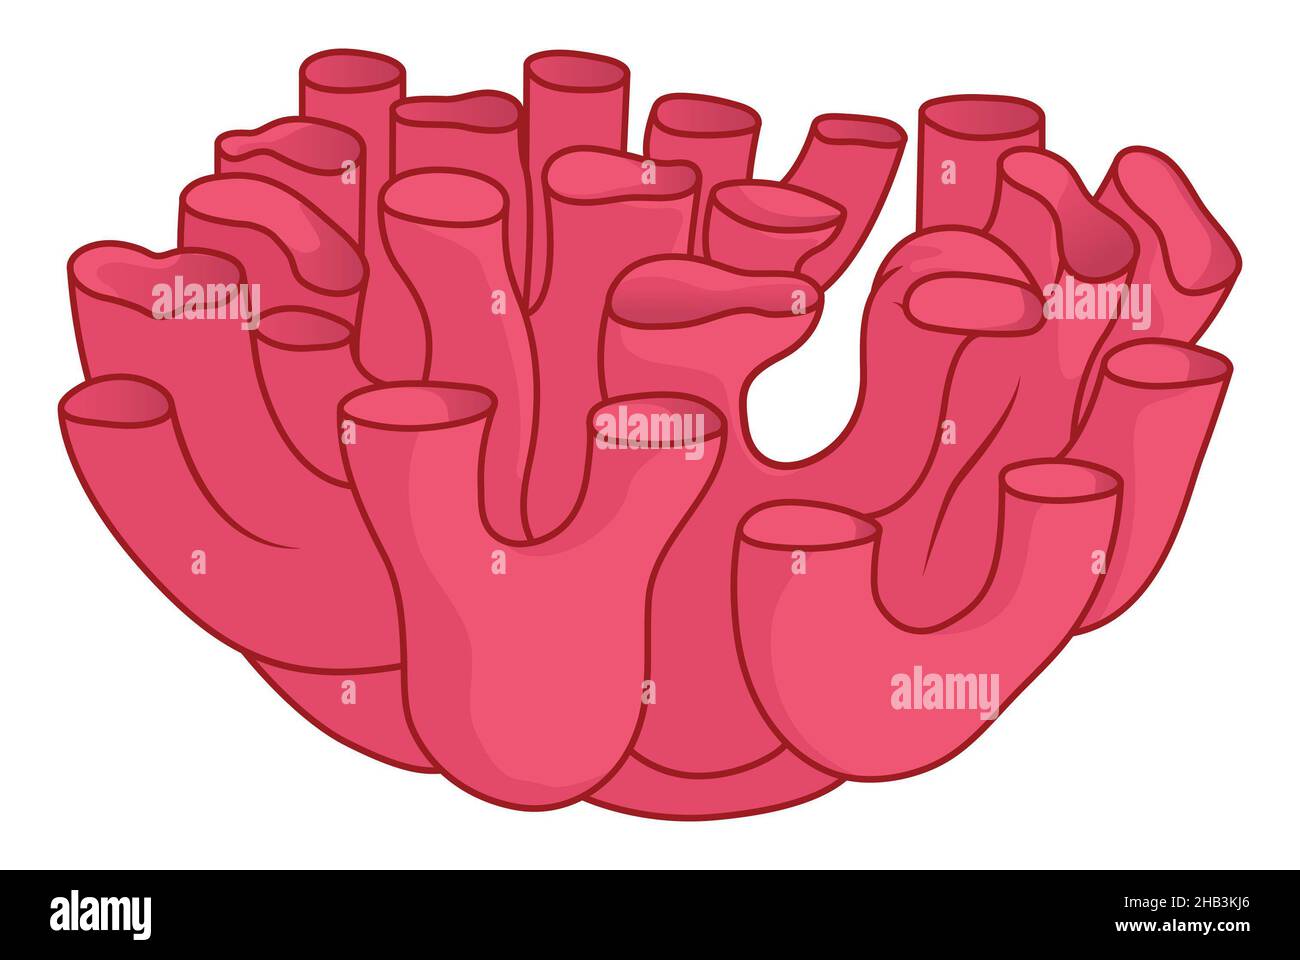 Réticulum endoplasmique lisse Note d'illustration médicale simple sur les structures tubulaires Banque D'Images